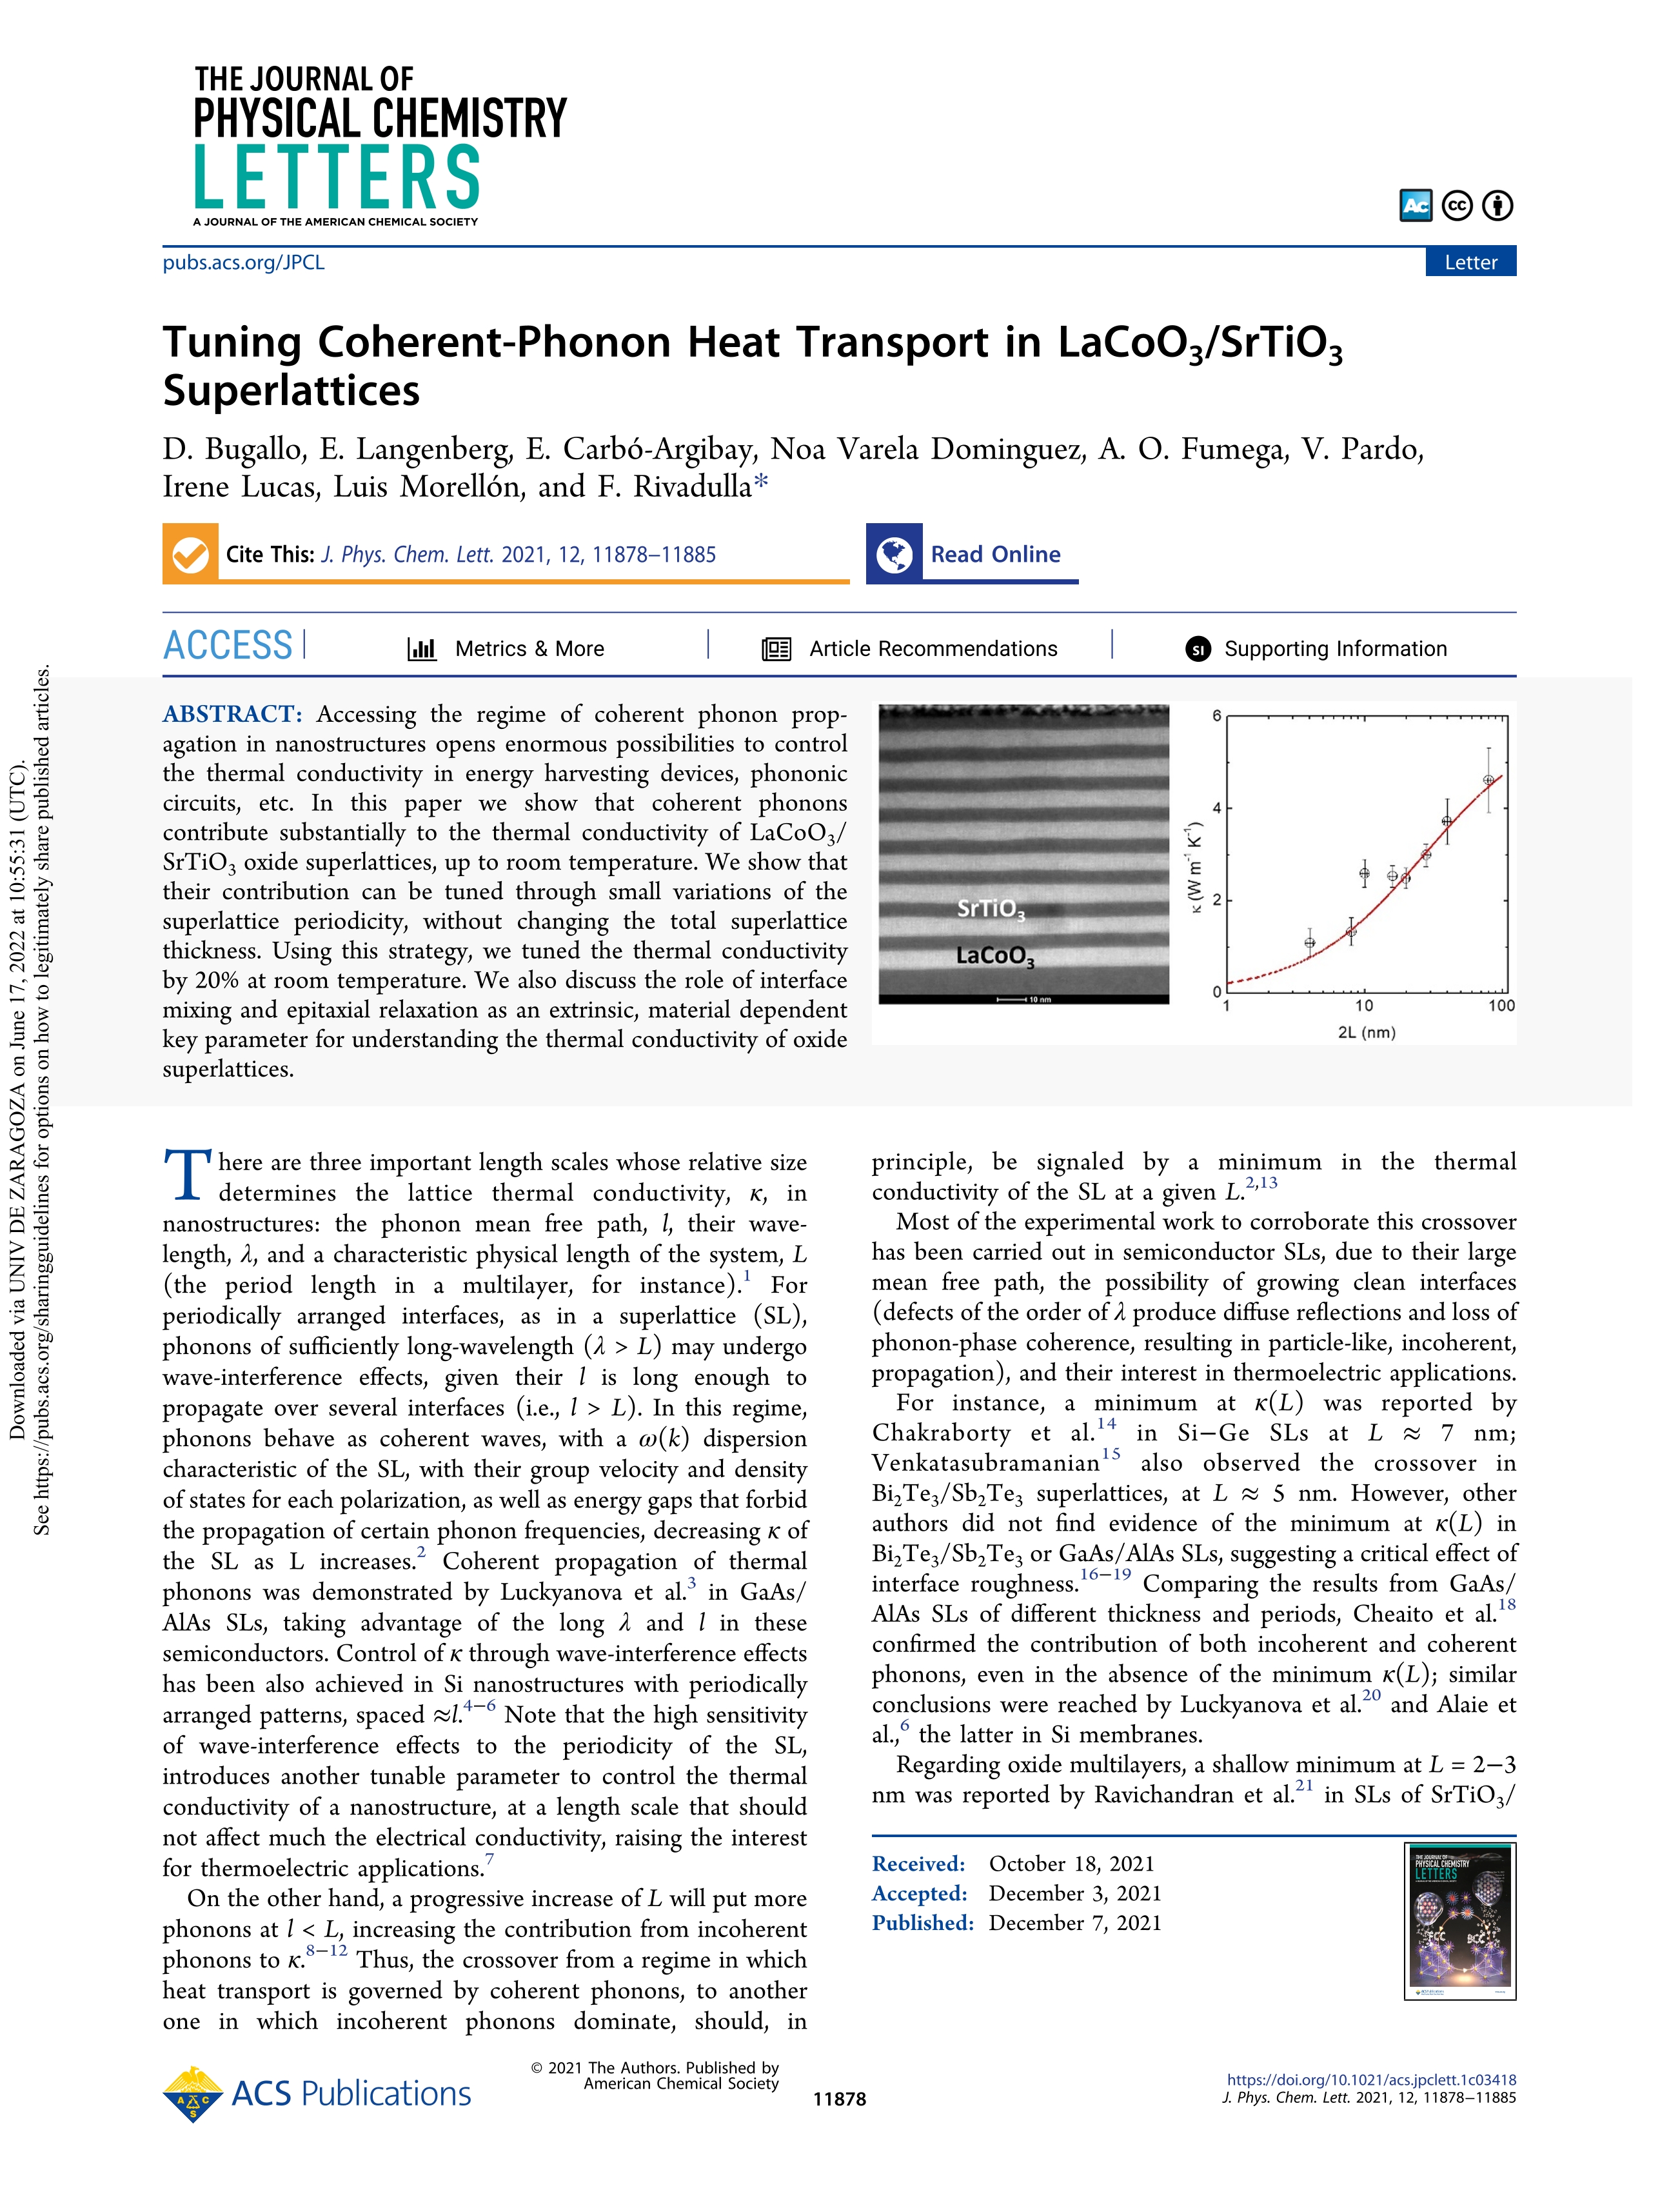 Tuning coherent-phonon heat transport in LaCoO3/SrTiO3 superlattices